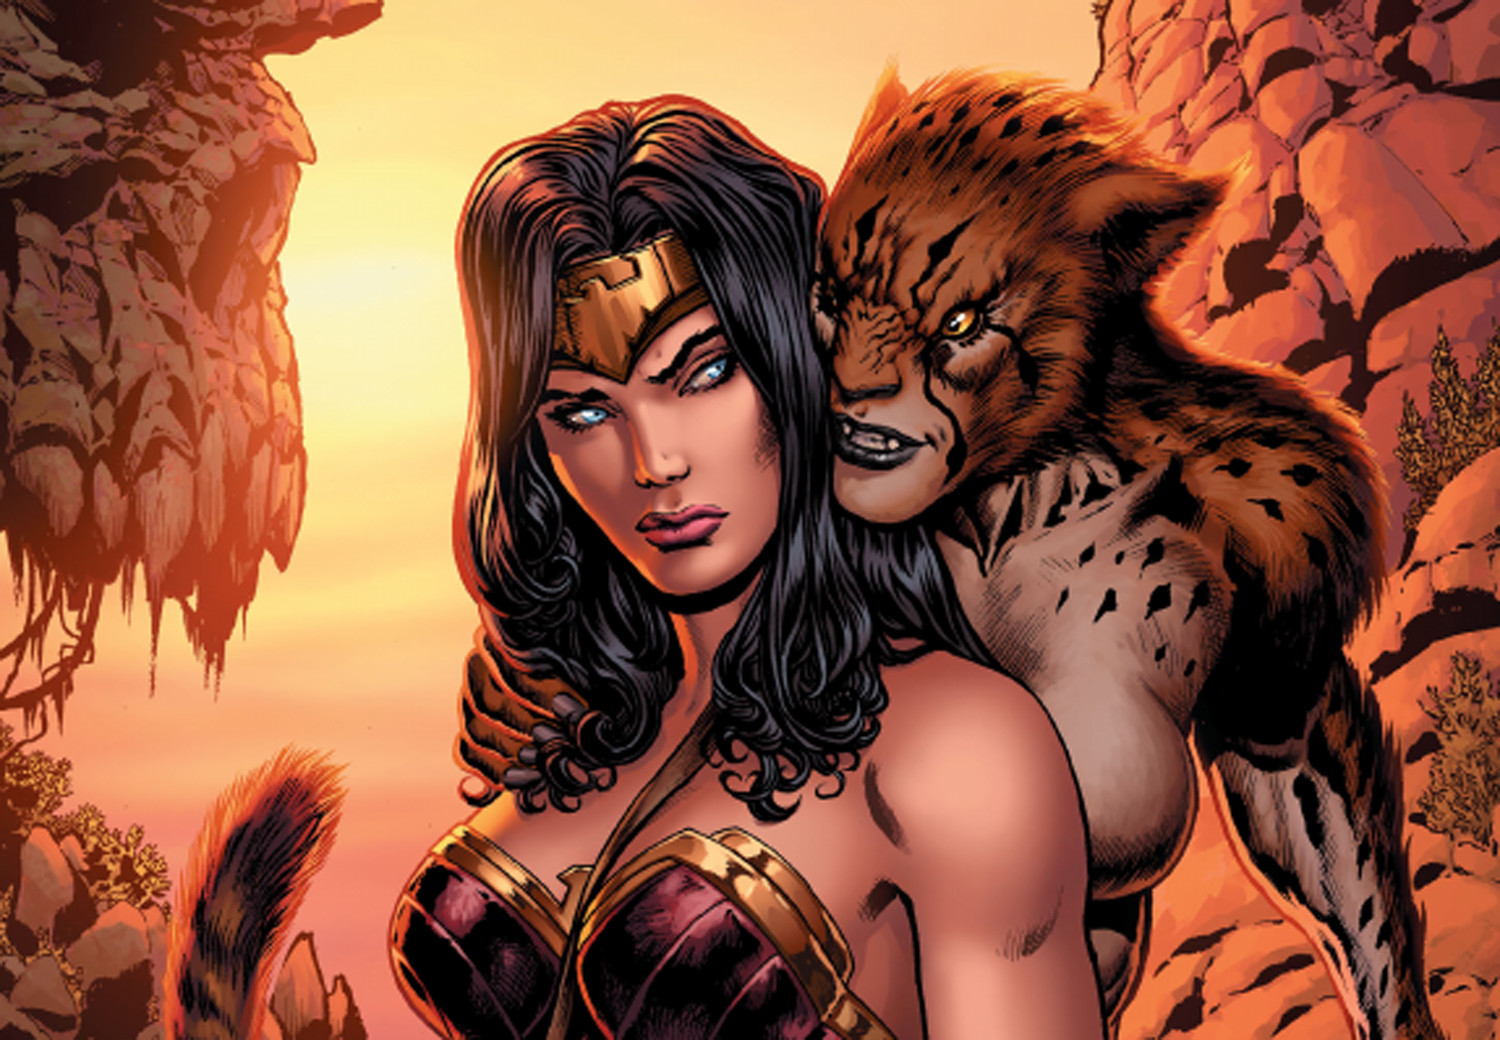 DC Comics | Cheetah mata deusa nos quadrinhos